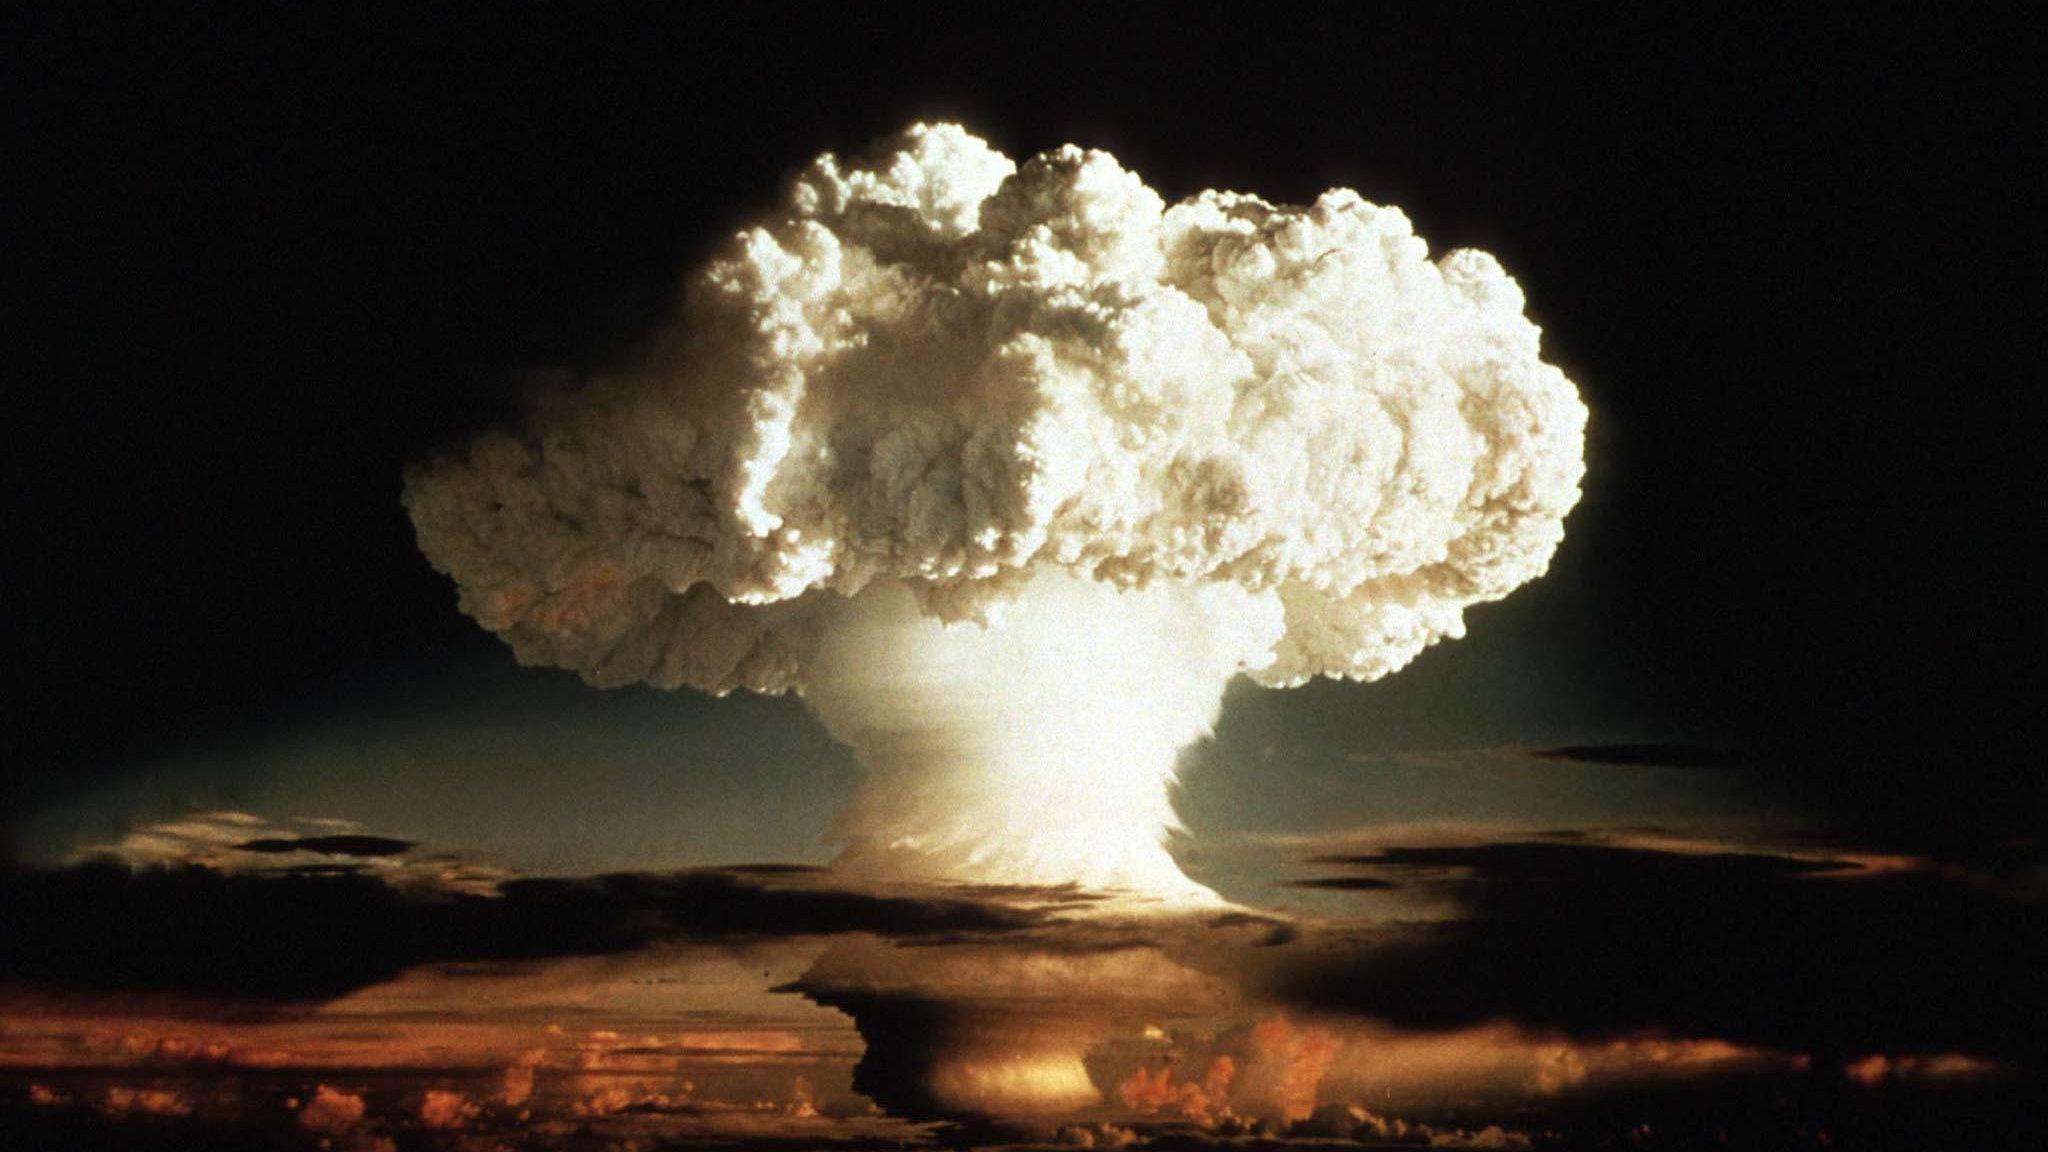 新地岛核弹图片